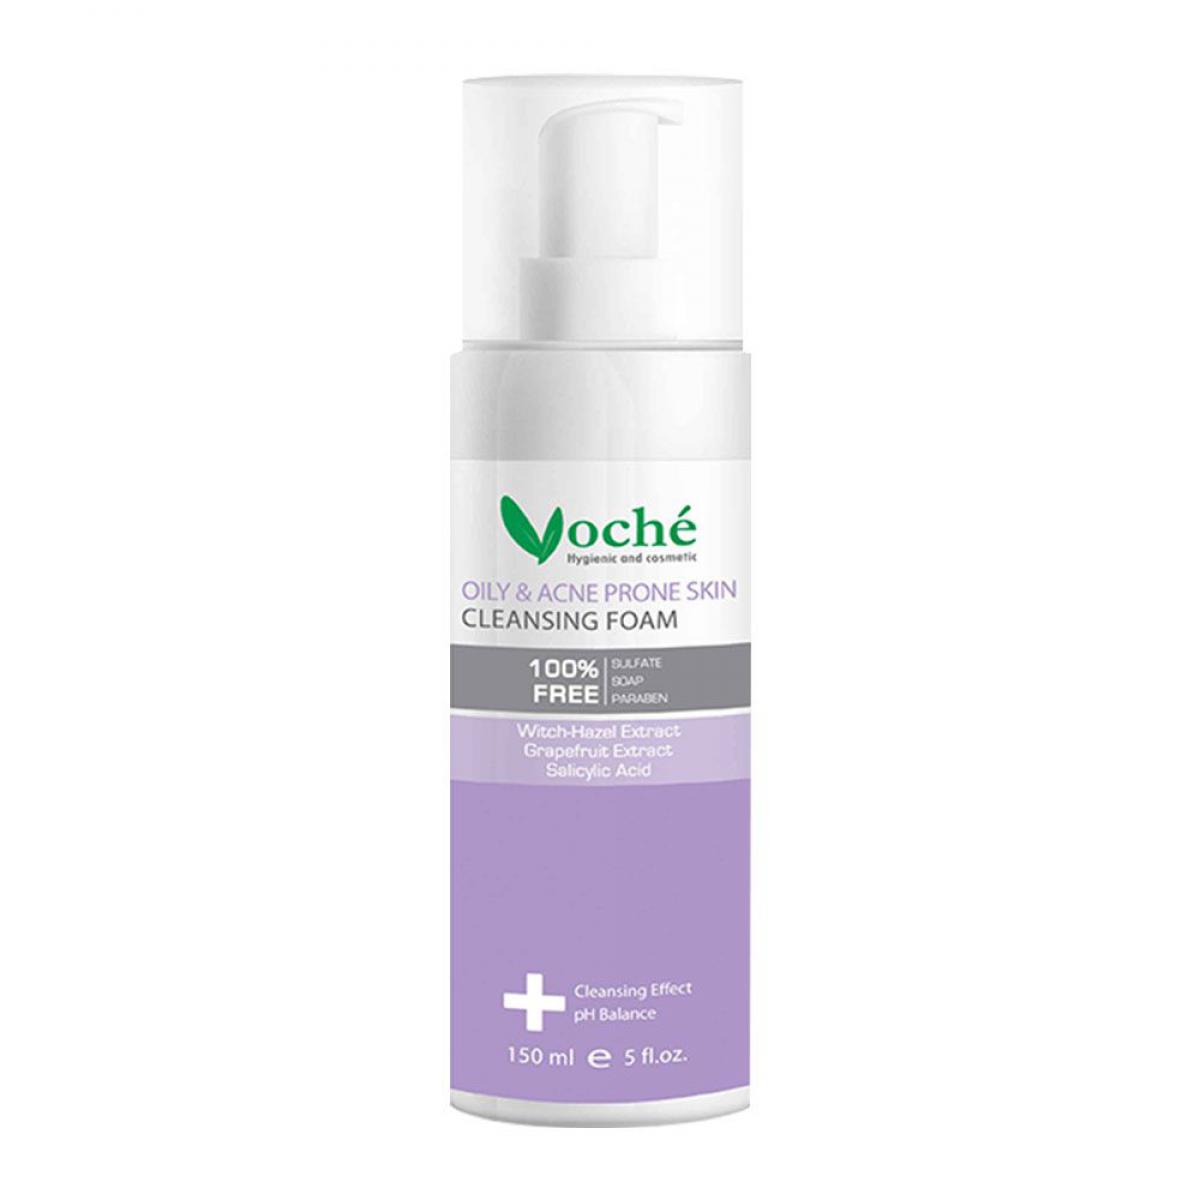 فوم شست و شوی صورت مناسب برای پوست های چرب و مستعد آکنه -  Cleansing foam for oily and acne prone skin